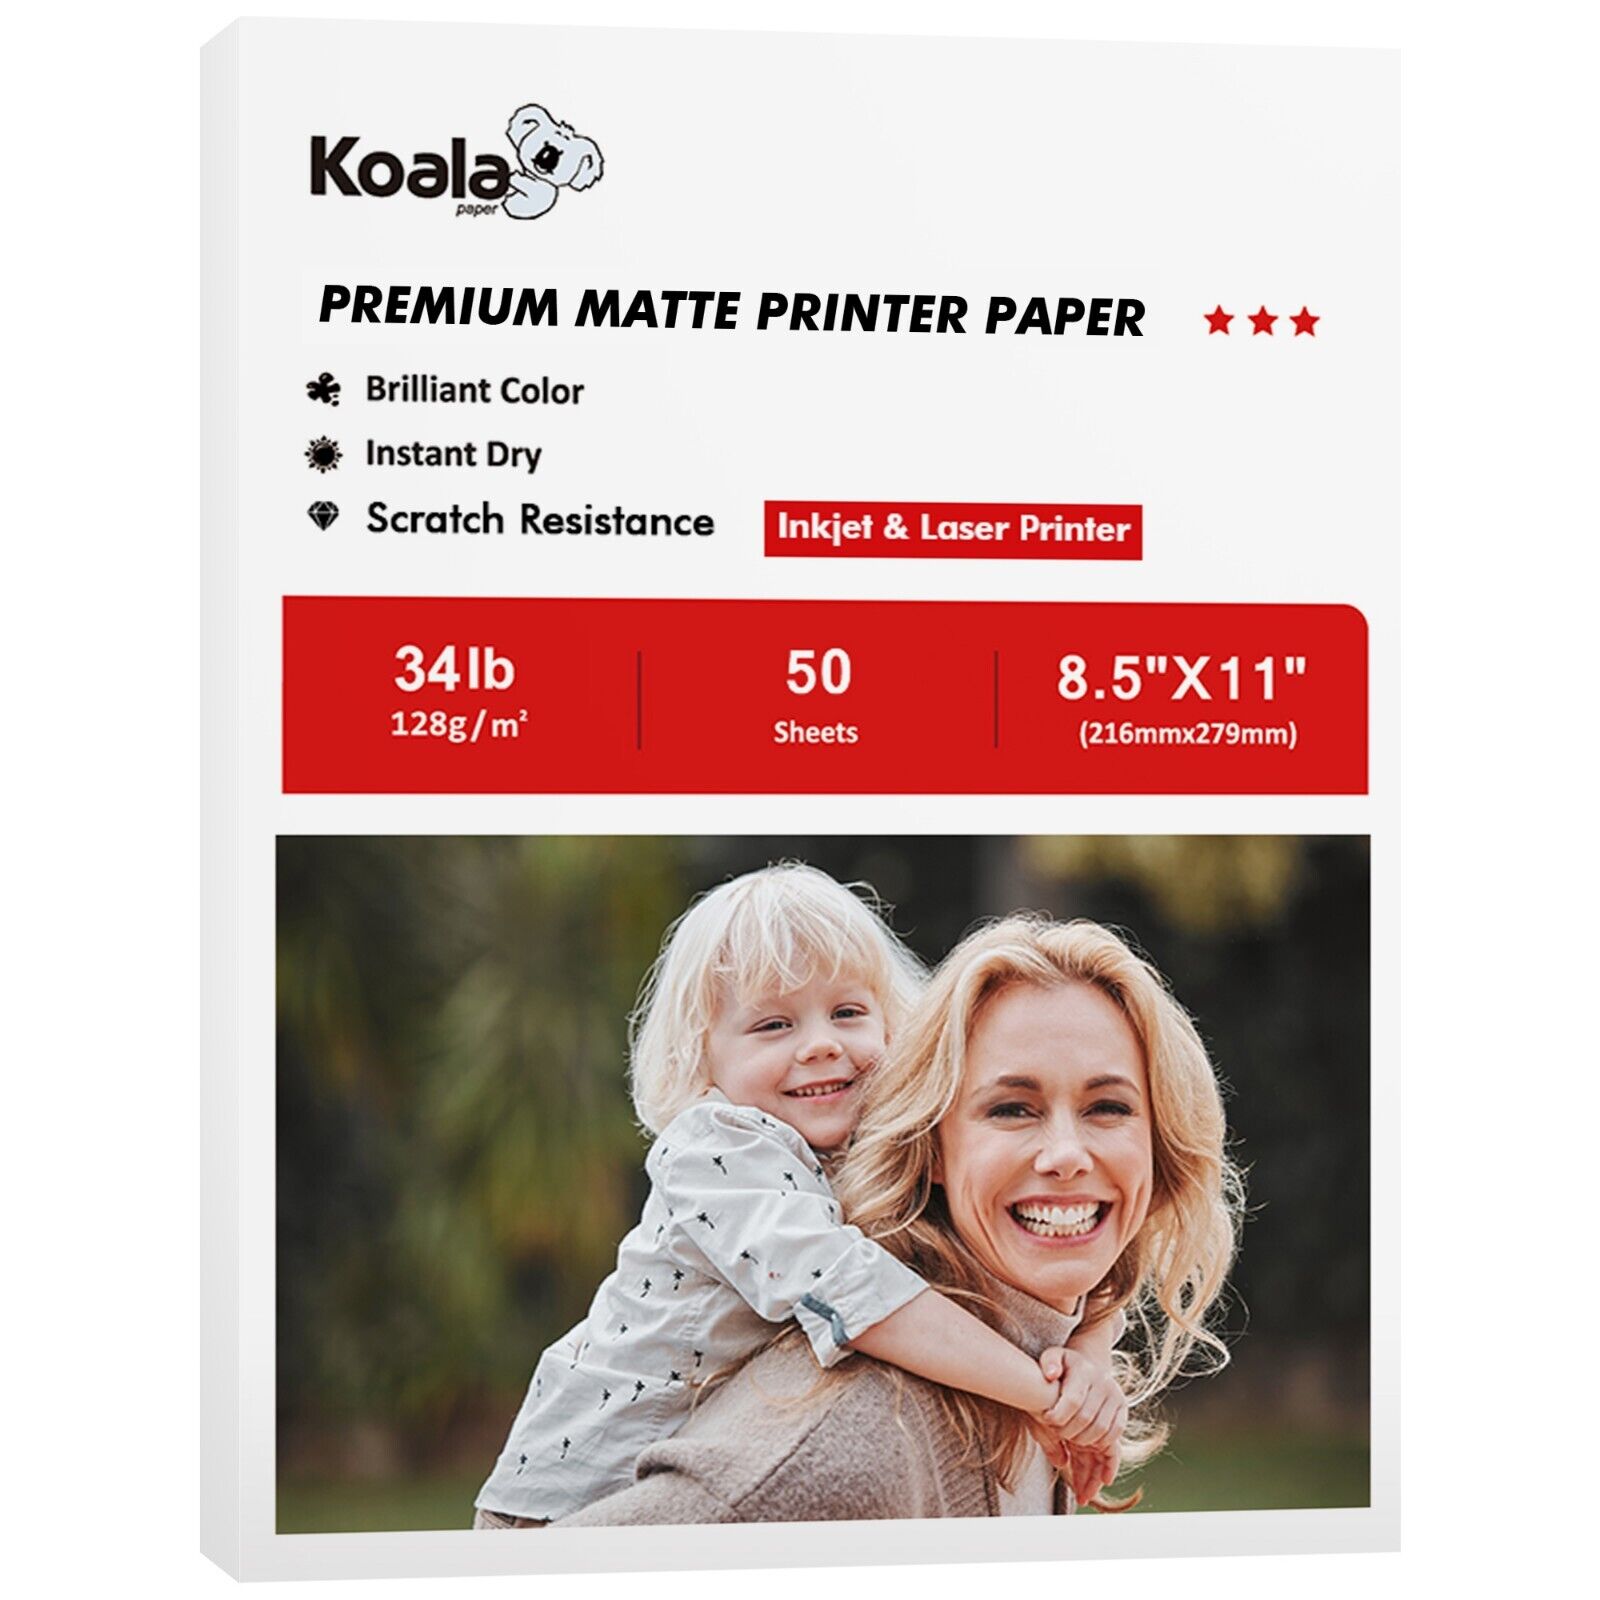 Koala Matte Photo Printer Paper 8.5x11 for Inkjet & Laser Epson HP 34lb Thin